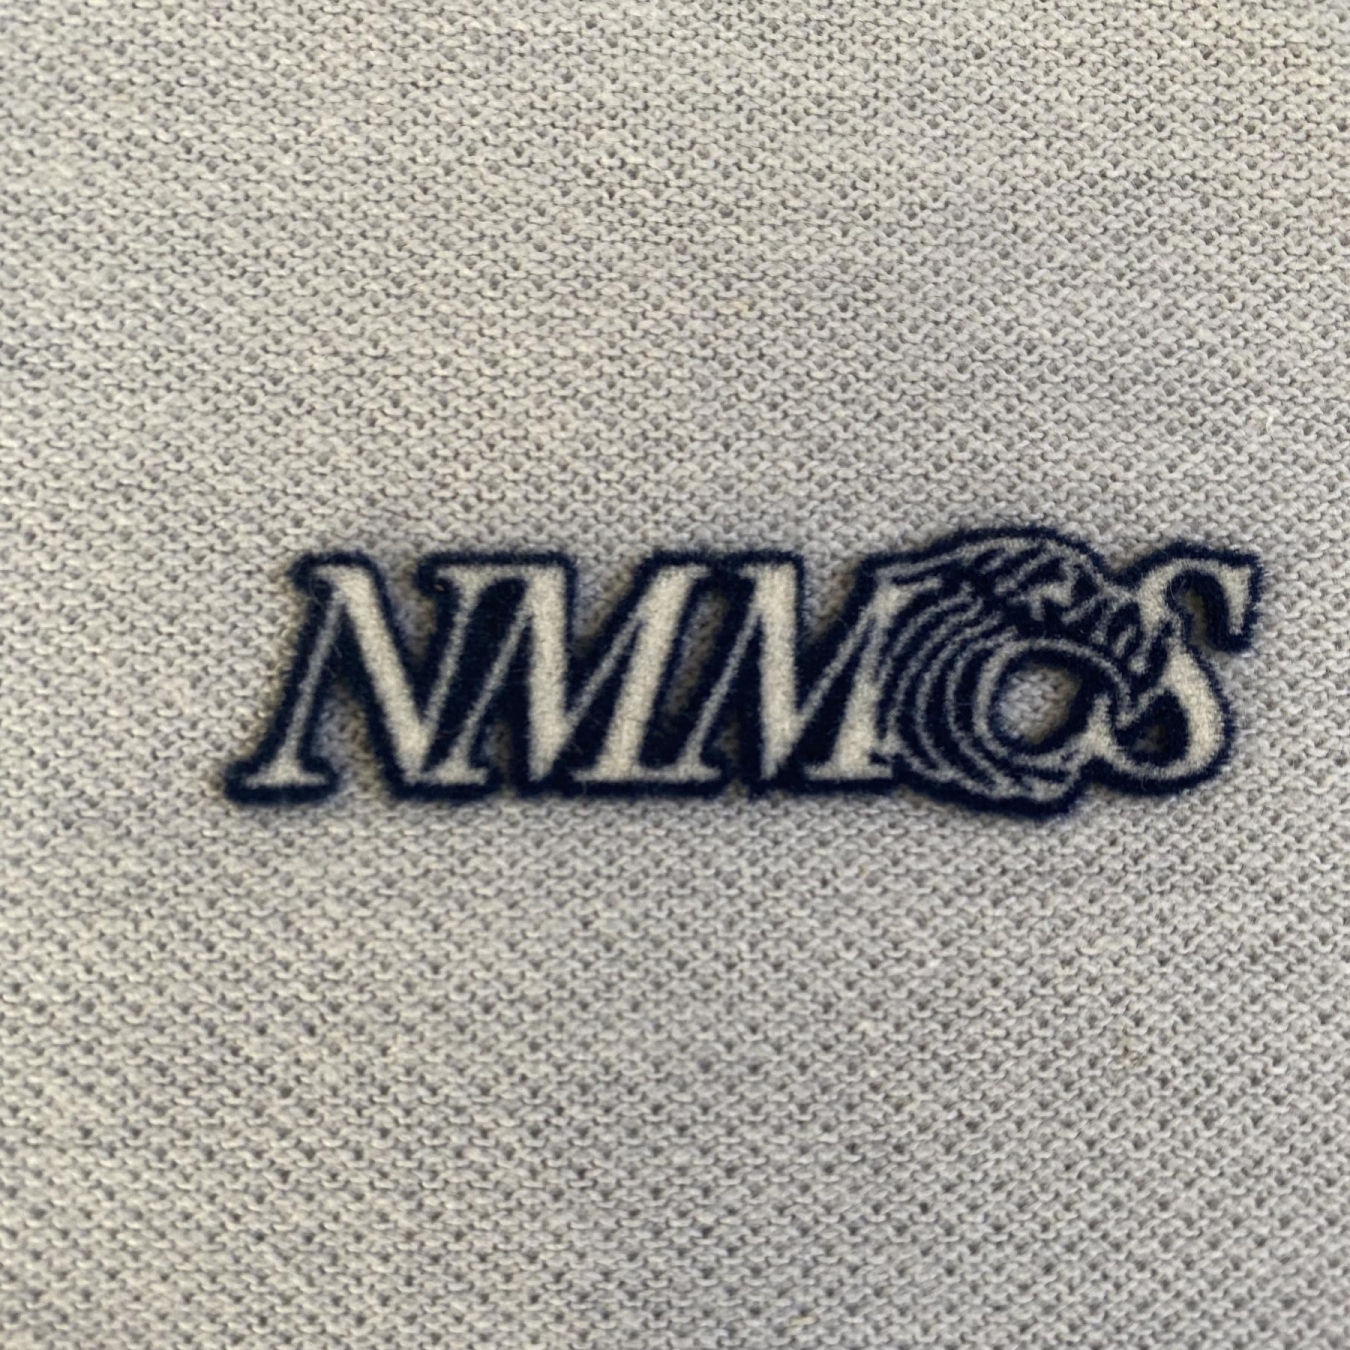 NMMCS Patch